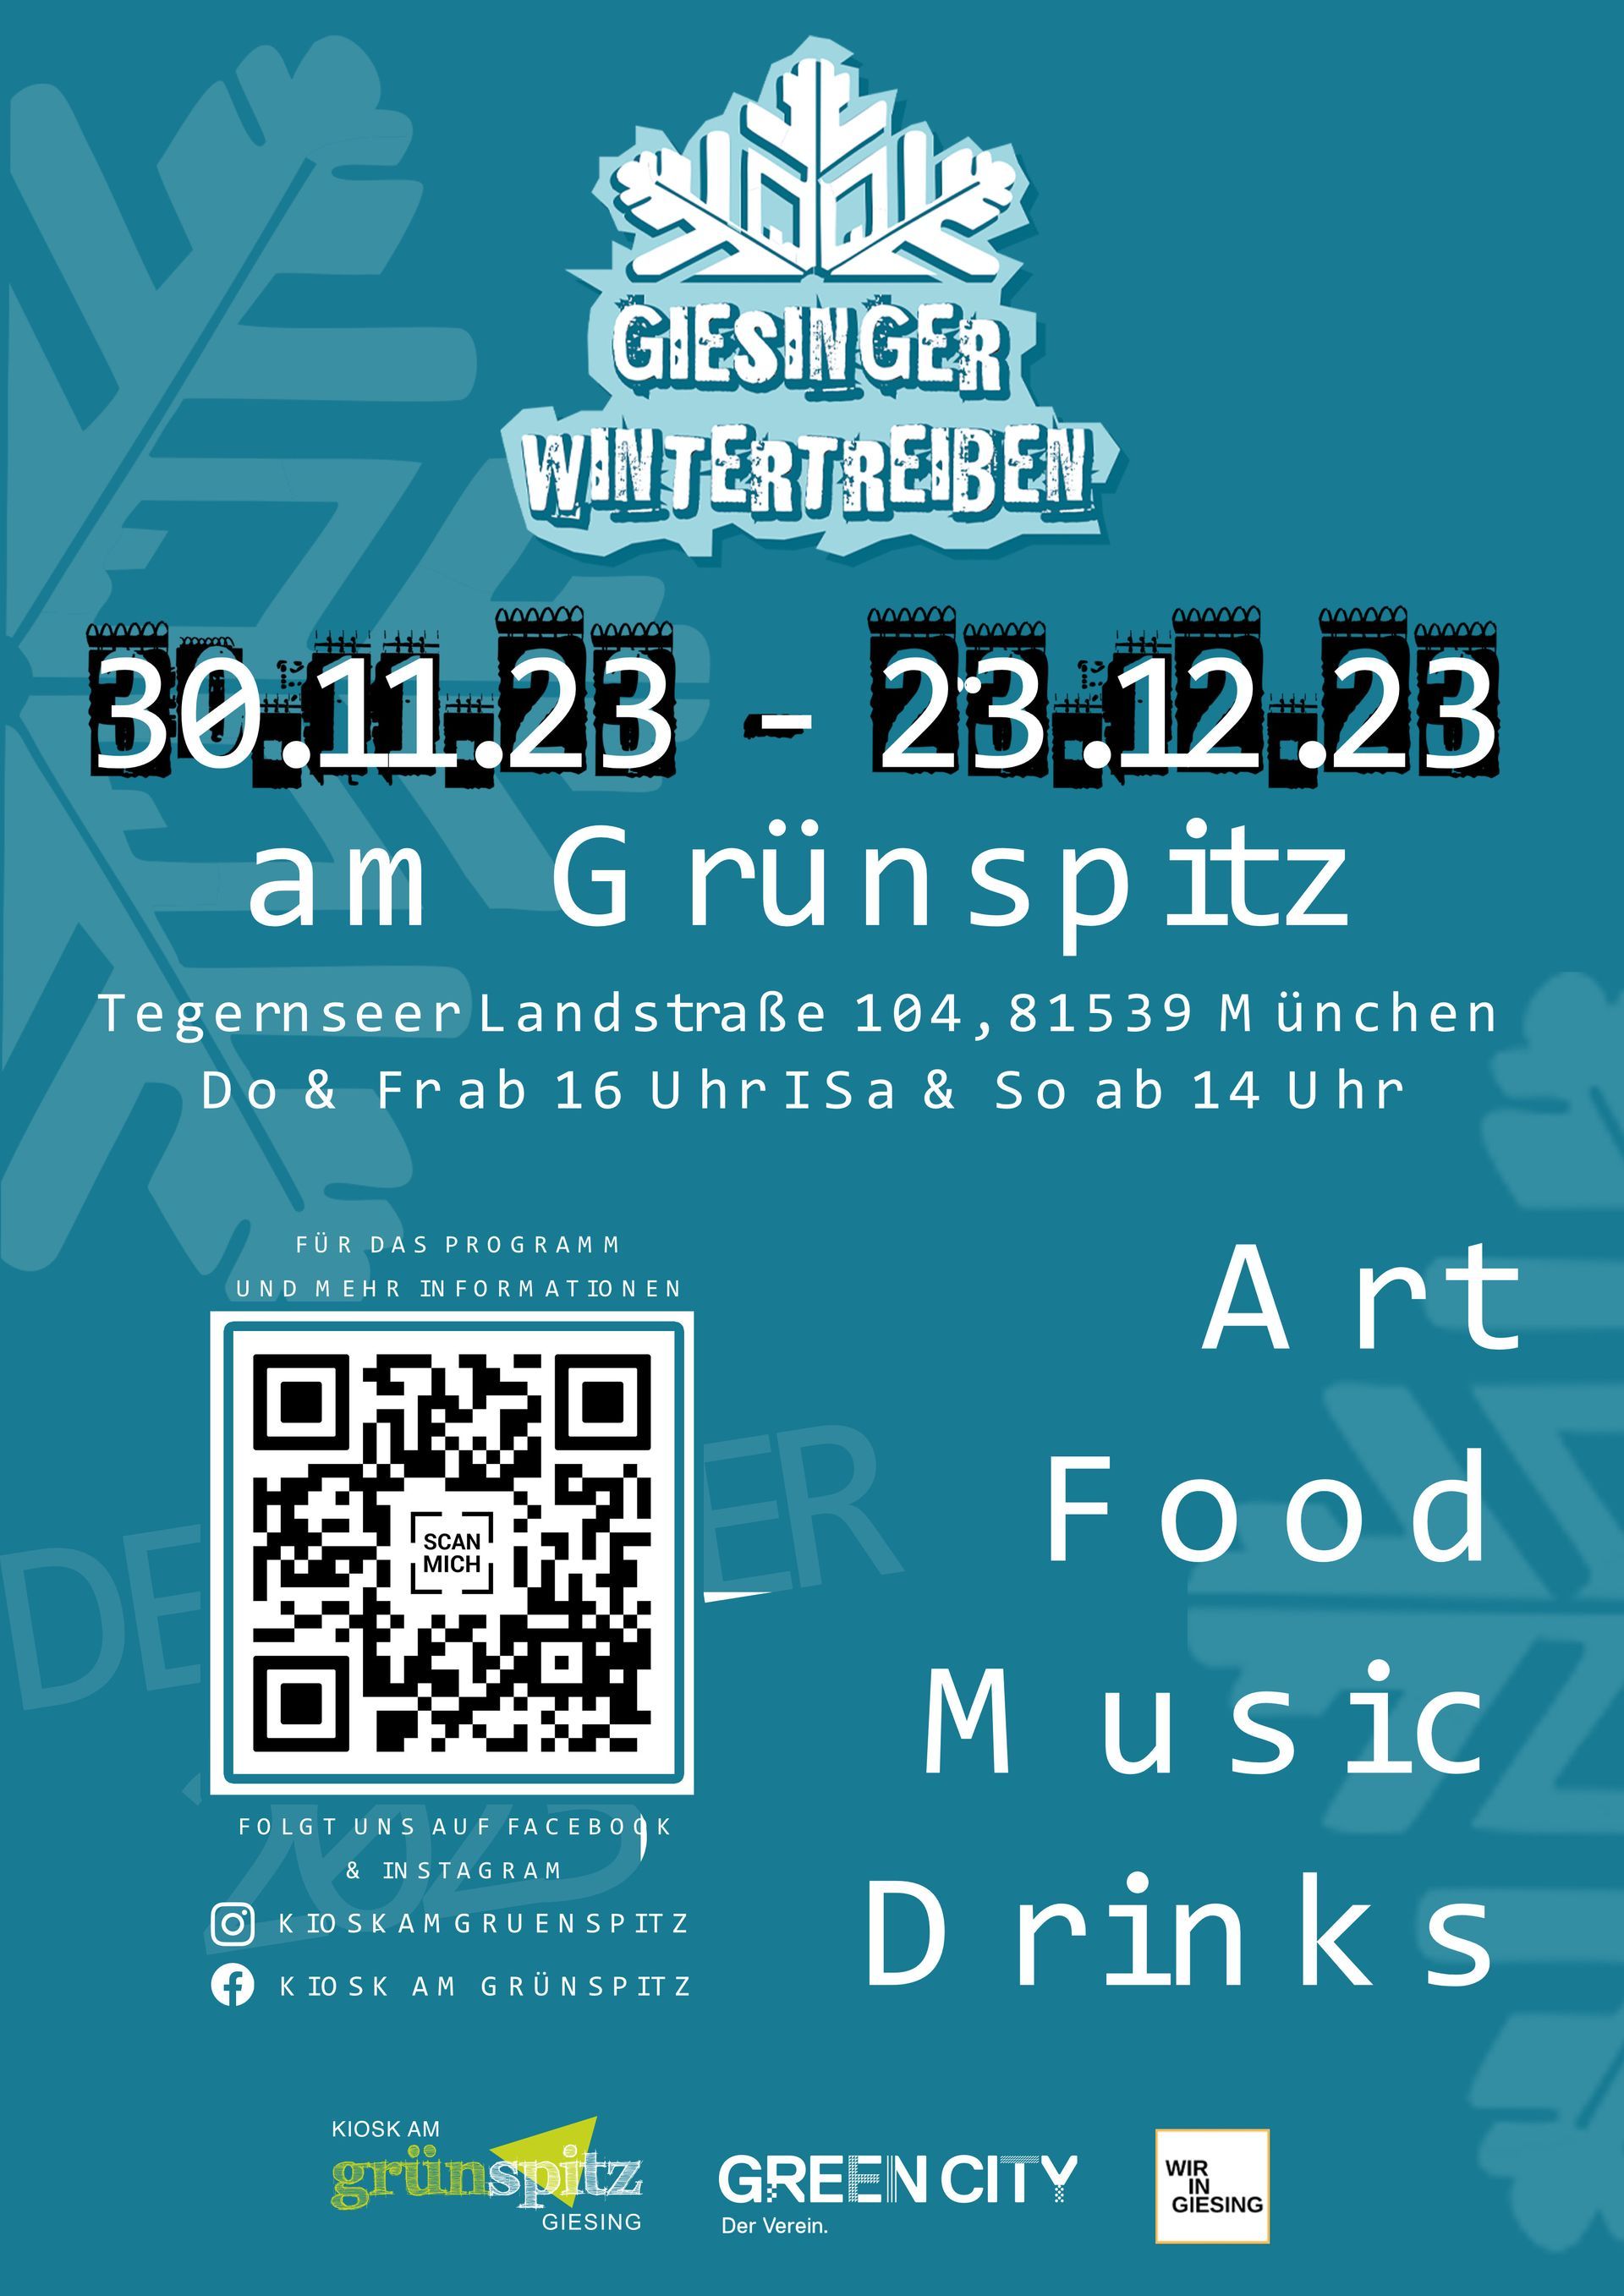 Plakat von der Veranstaltung Giesinger Wintertreiben München